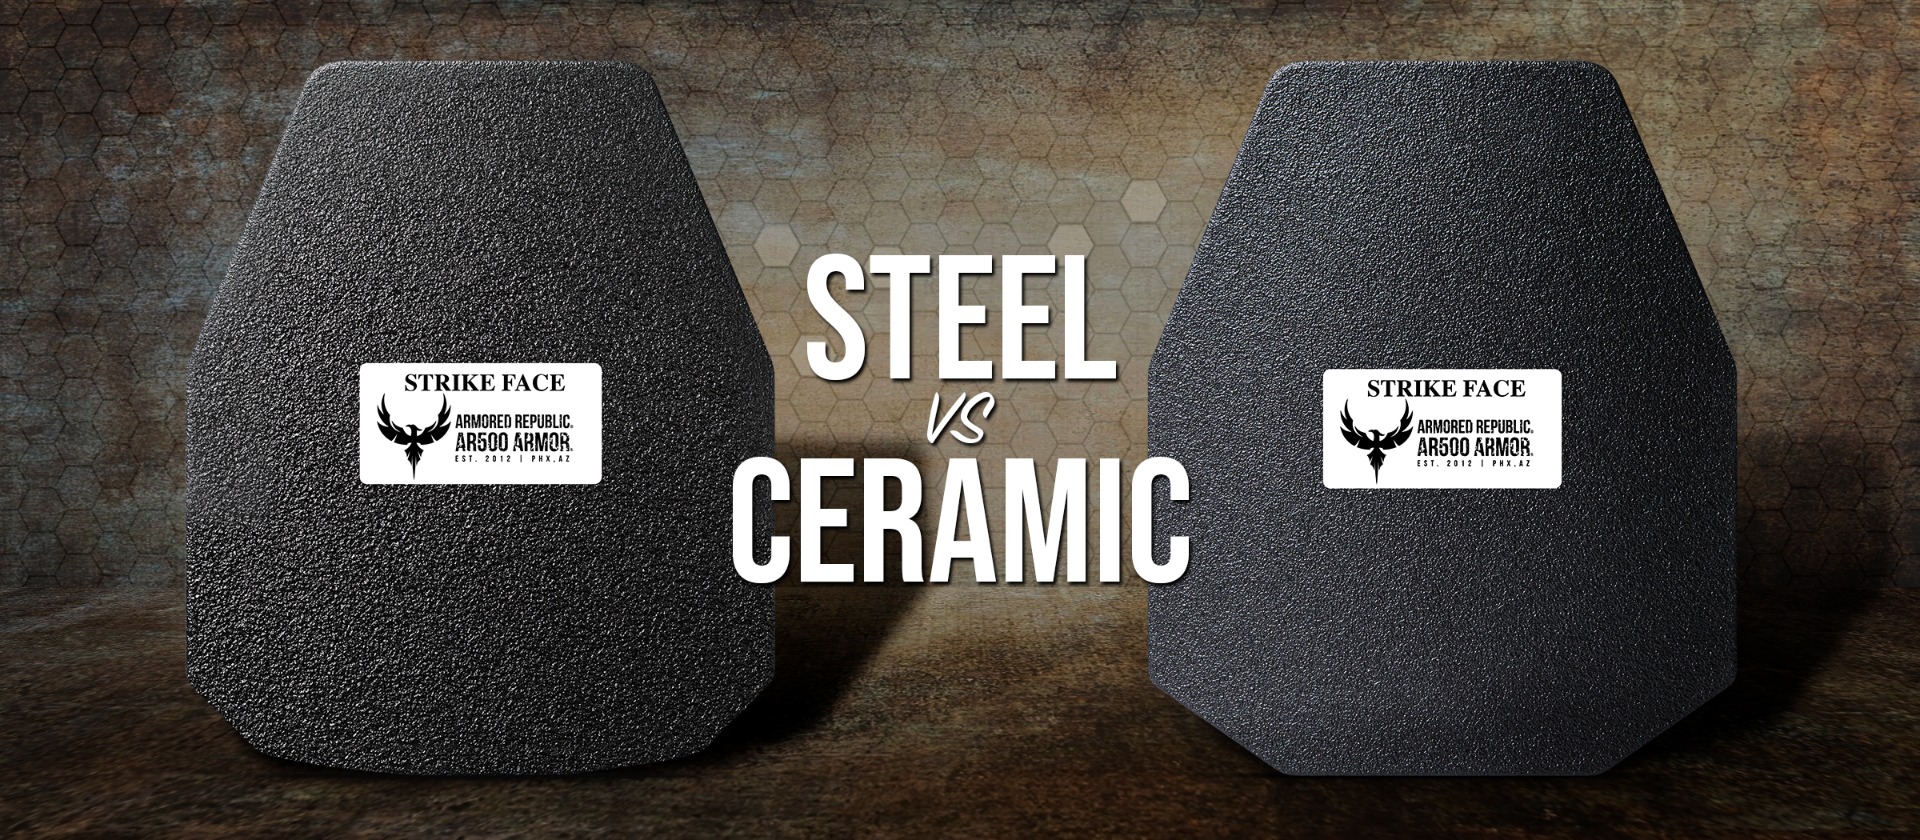 Steel vs Ceramic Body Armor